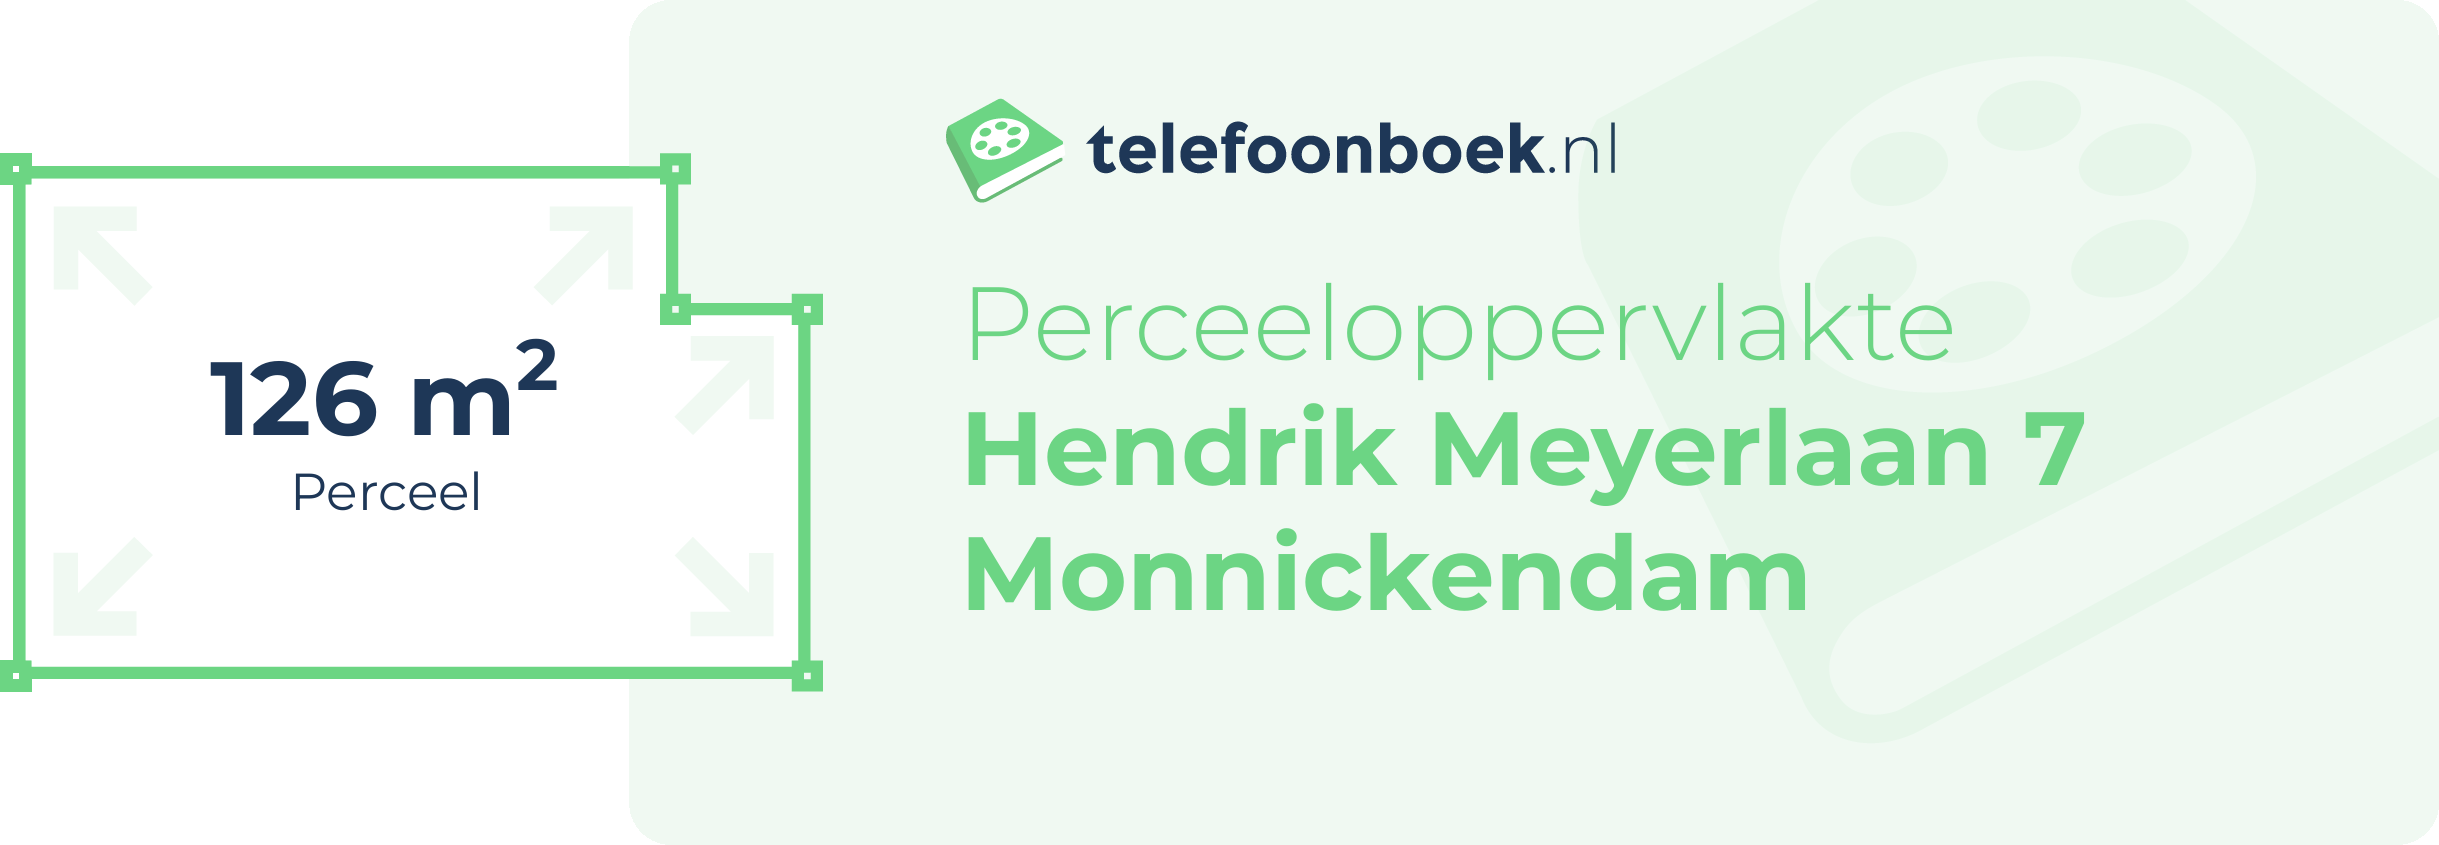 Perceeloppervlakte Hendrik Meyerlaan 7 Monnickendam